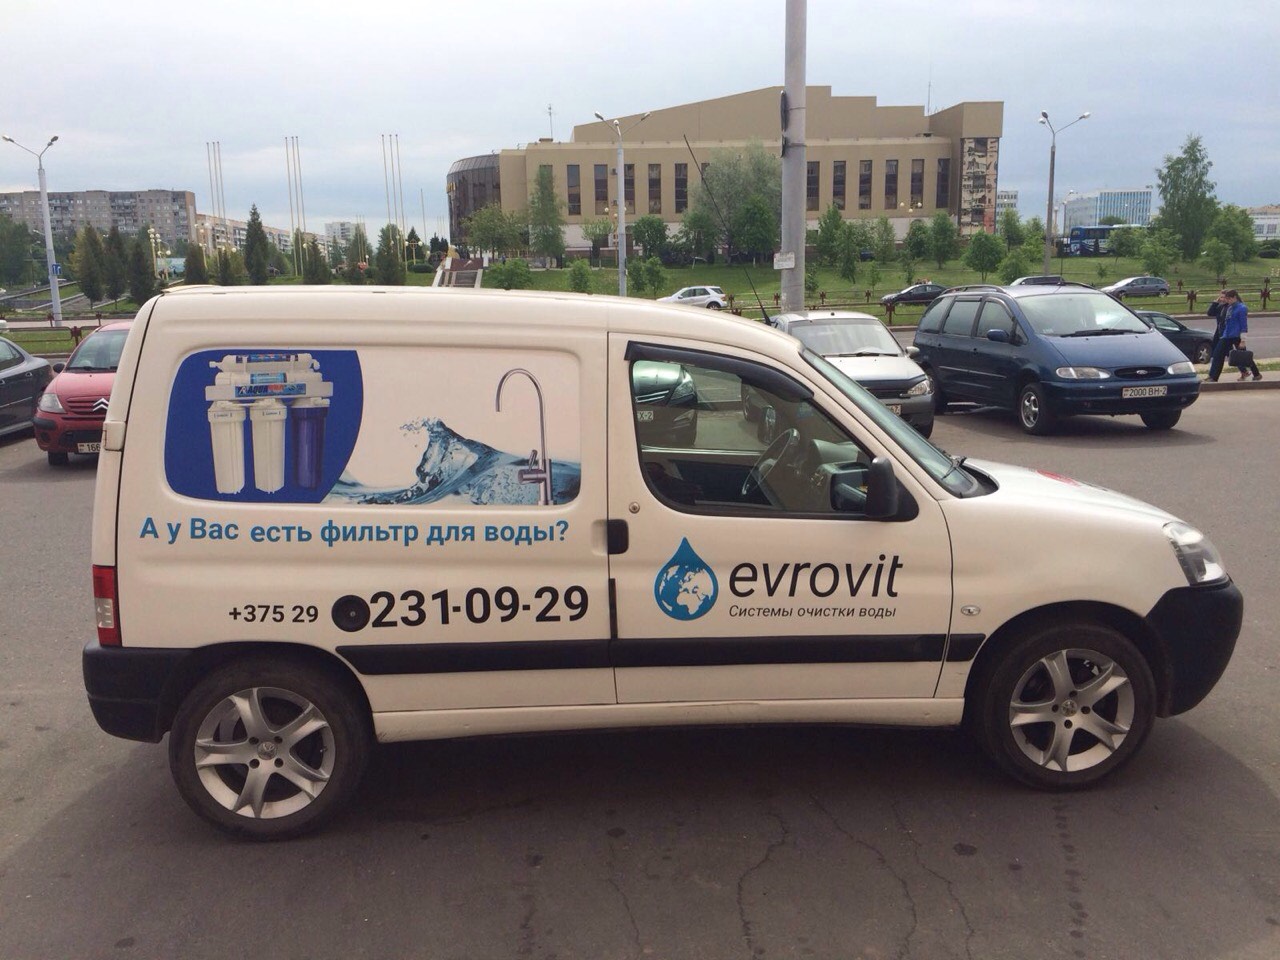 Фильтры для воды Витебск компания evrovit машина